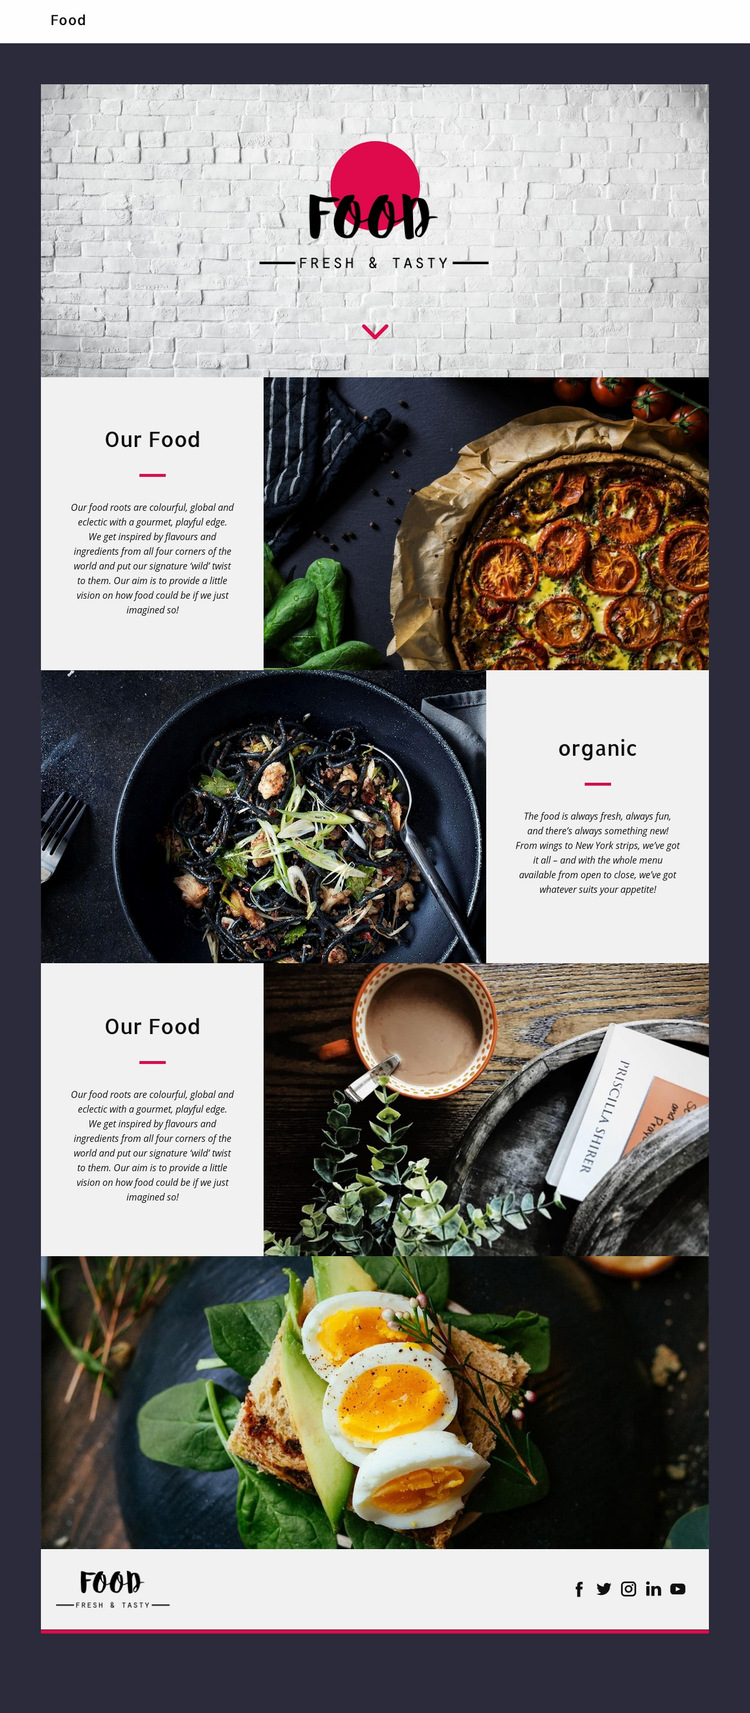 Fine oriental restaurant Web Page Design